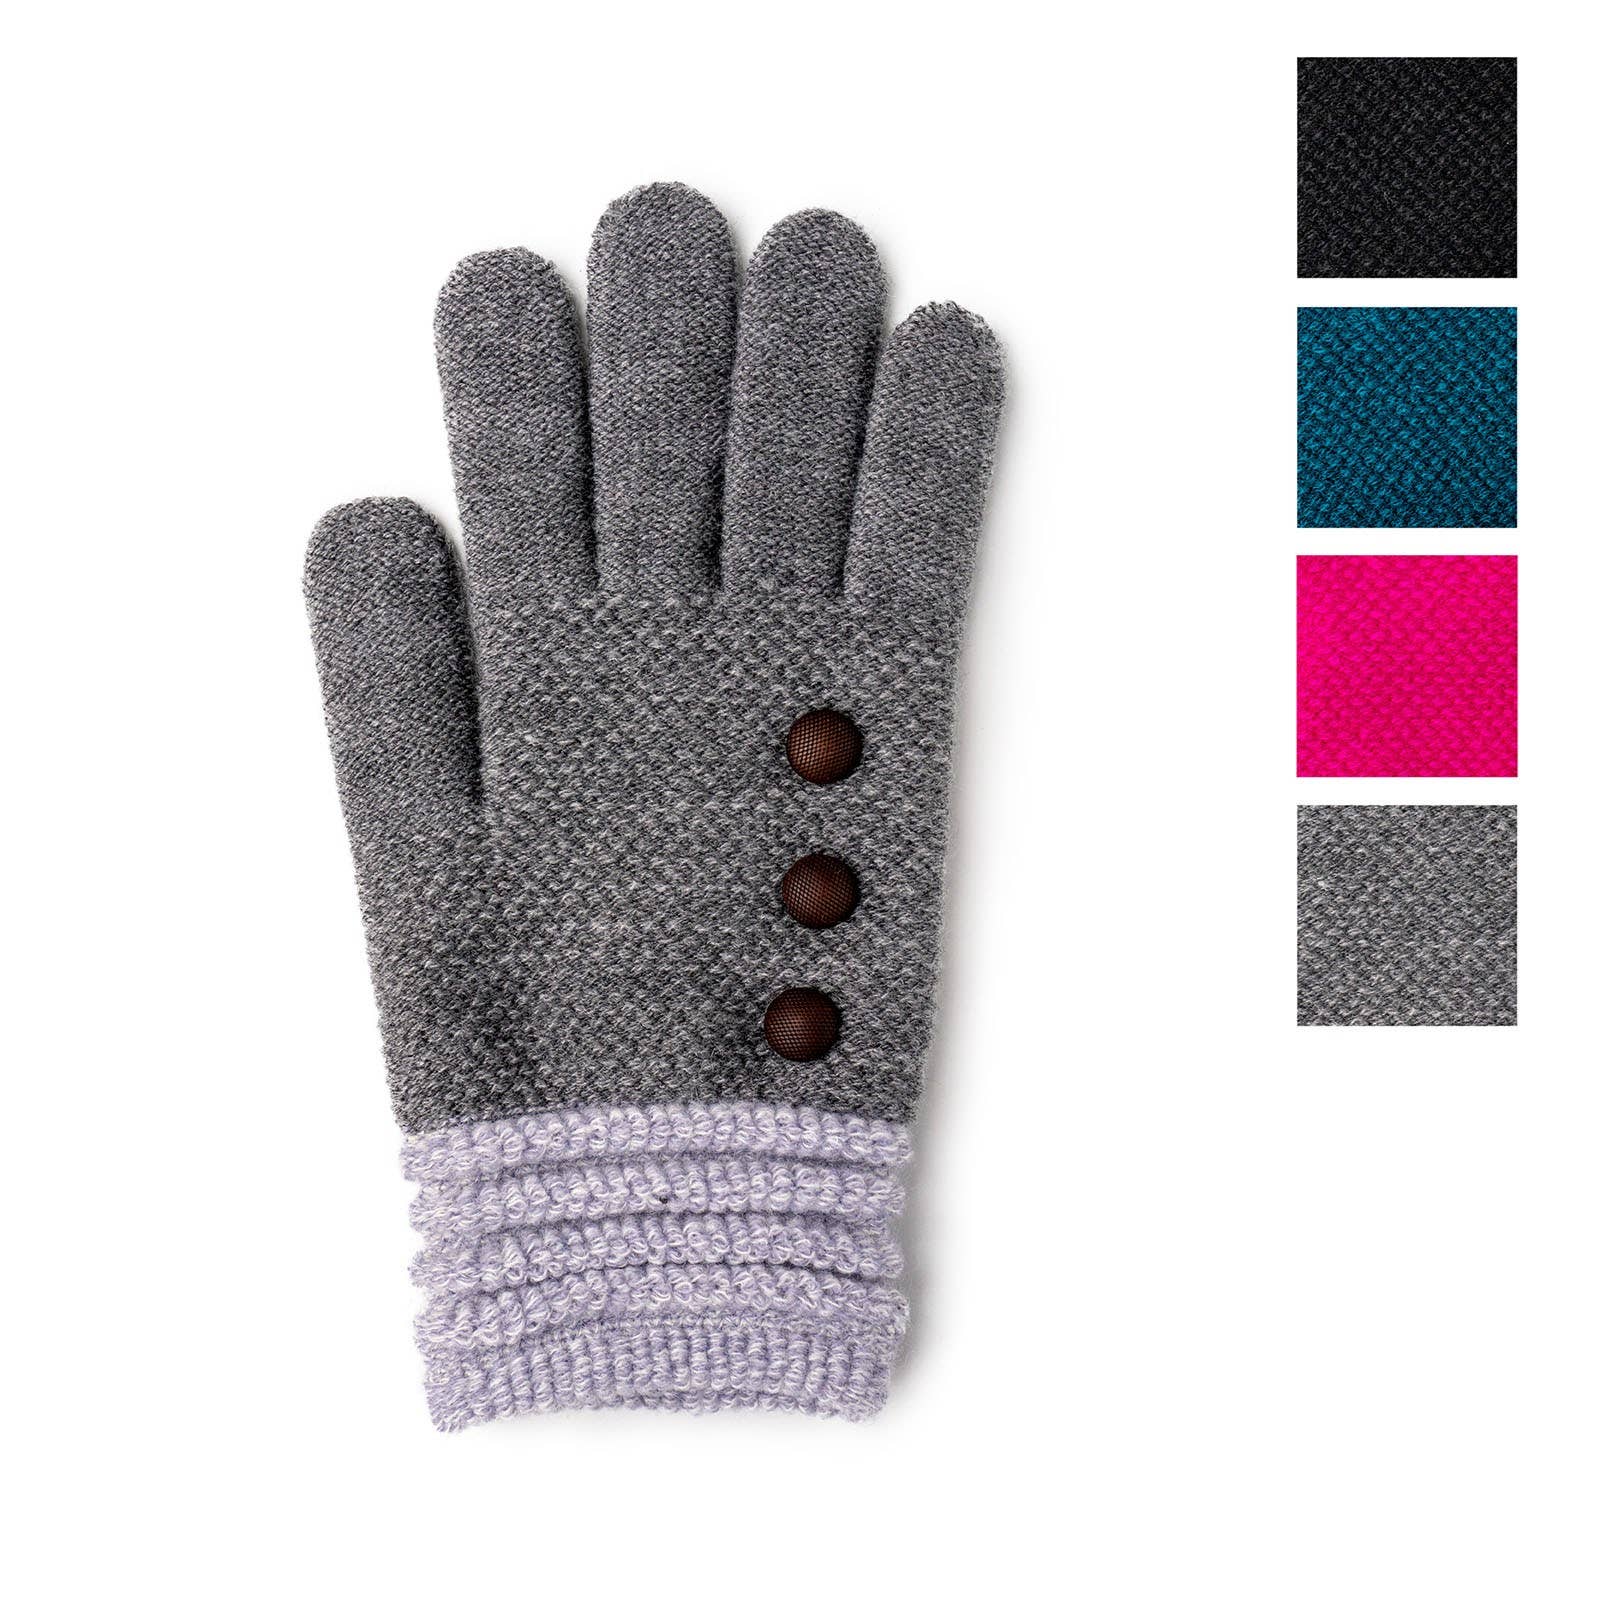 Seashell guantes sin dedos hechos a mano Crochet invierno calor lavable y regalo elegante para ella Accesorios Guantes y manoplas Manoplas y manguitos 